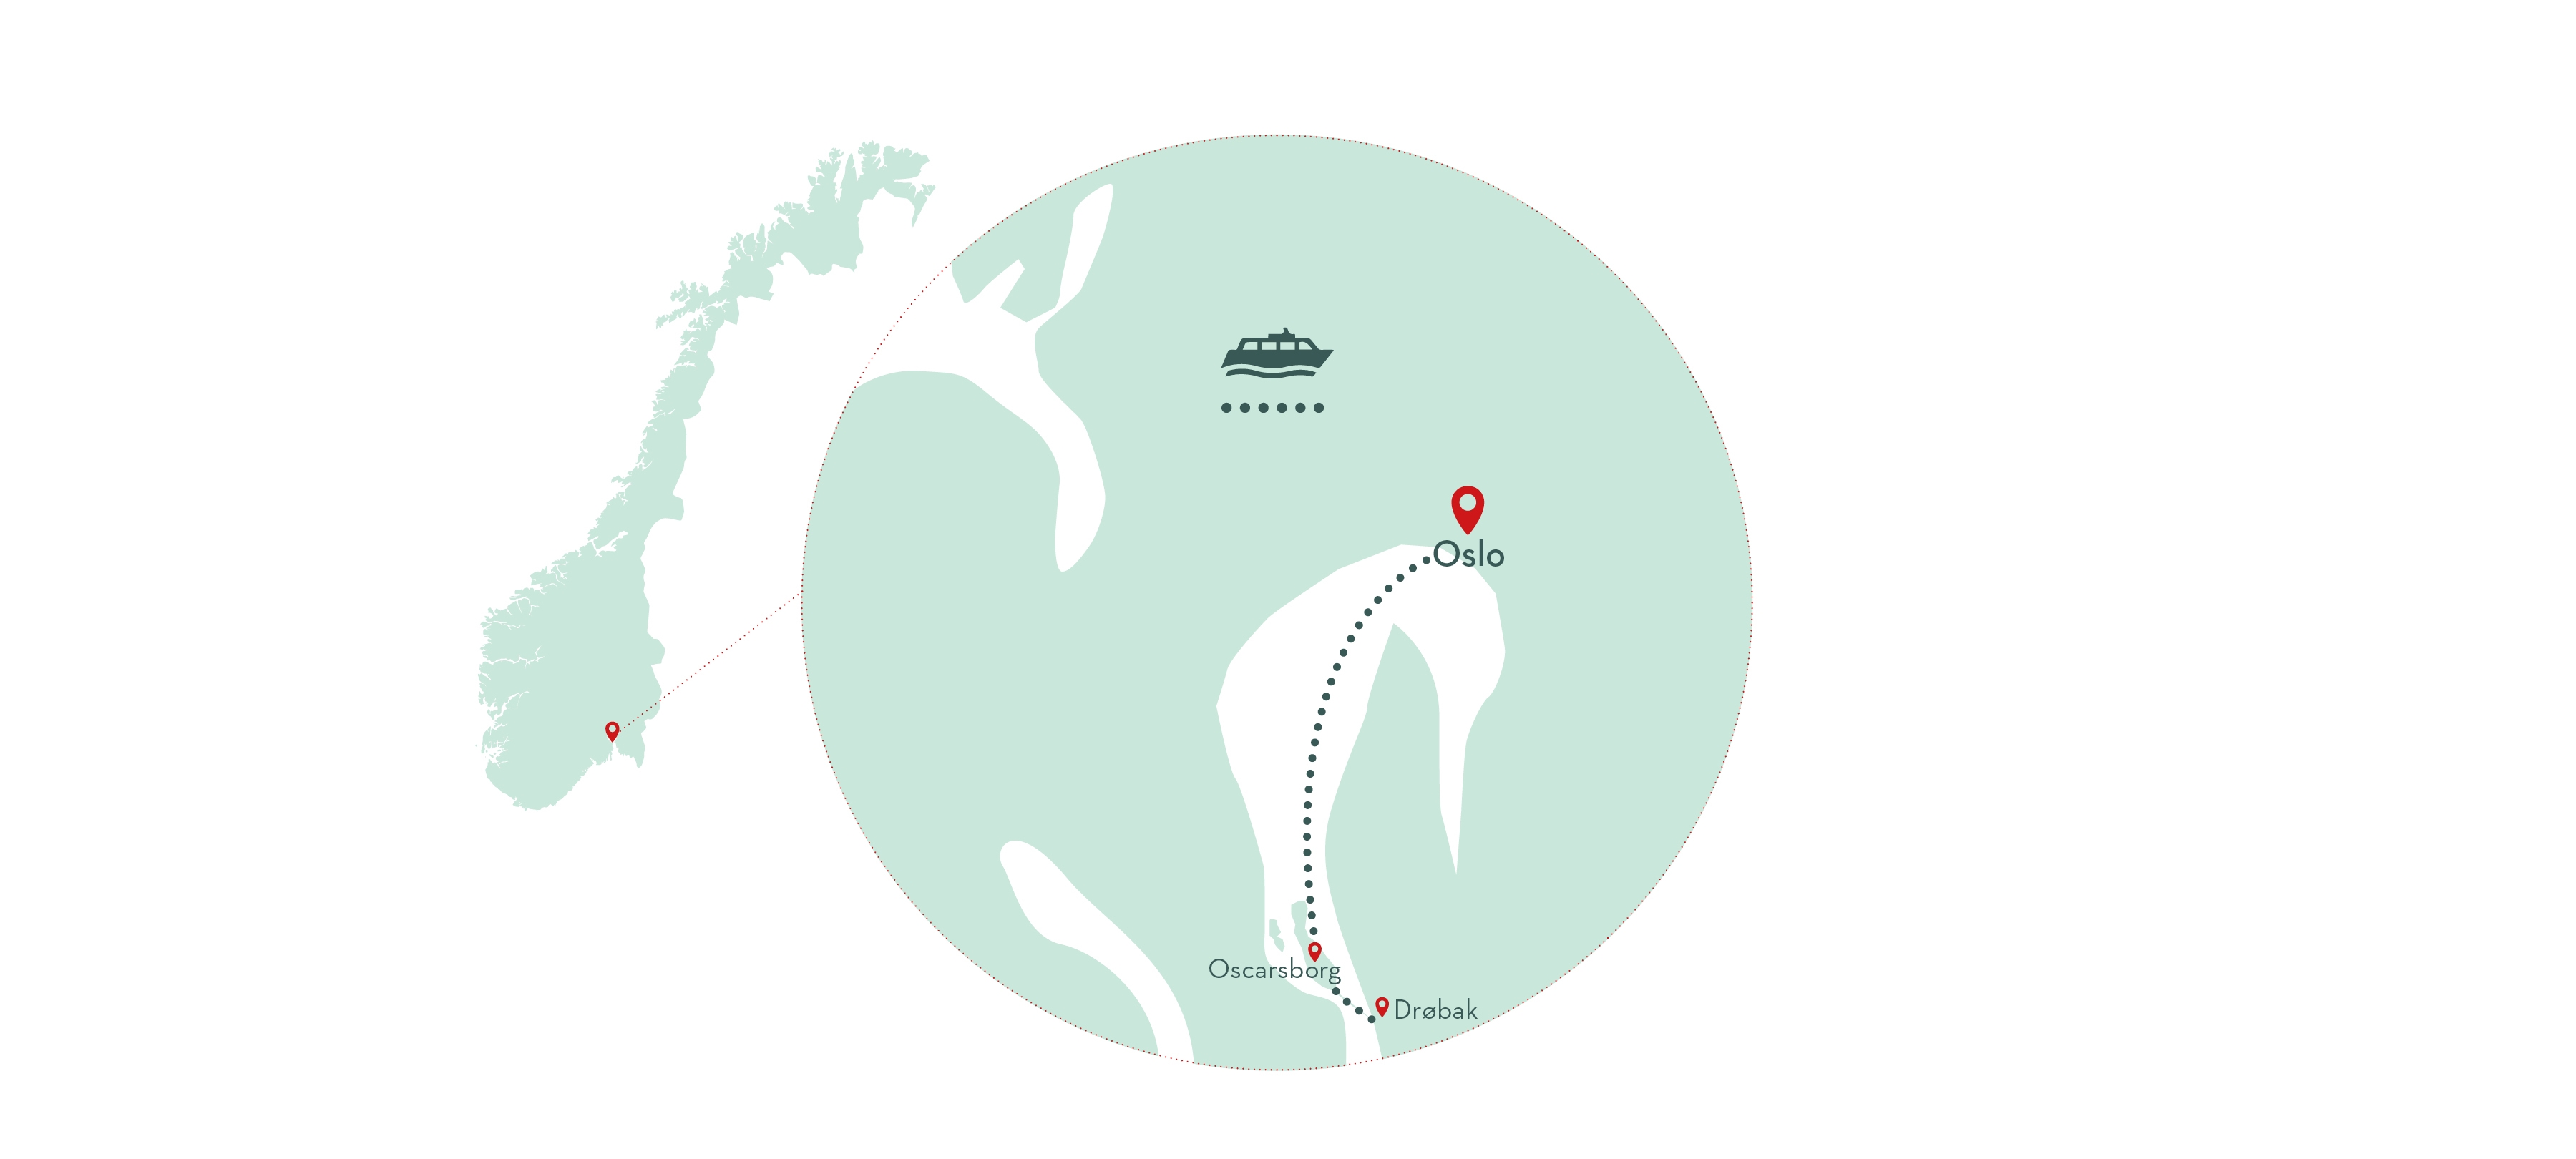 Crucero por el fiordo de Oslo al pueblo navideño de Drøbak